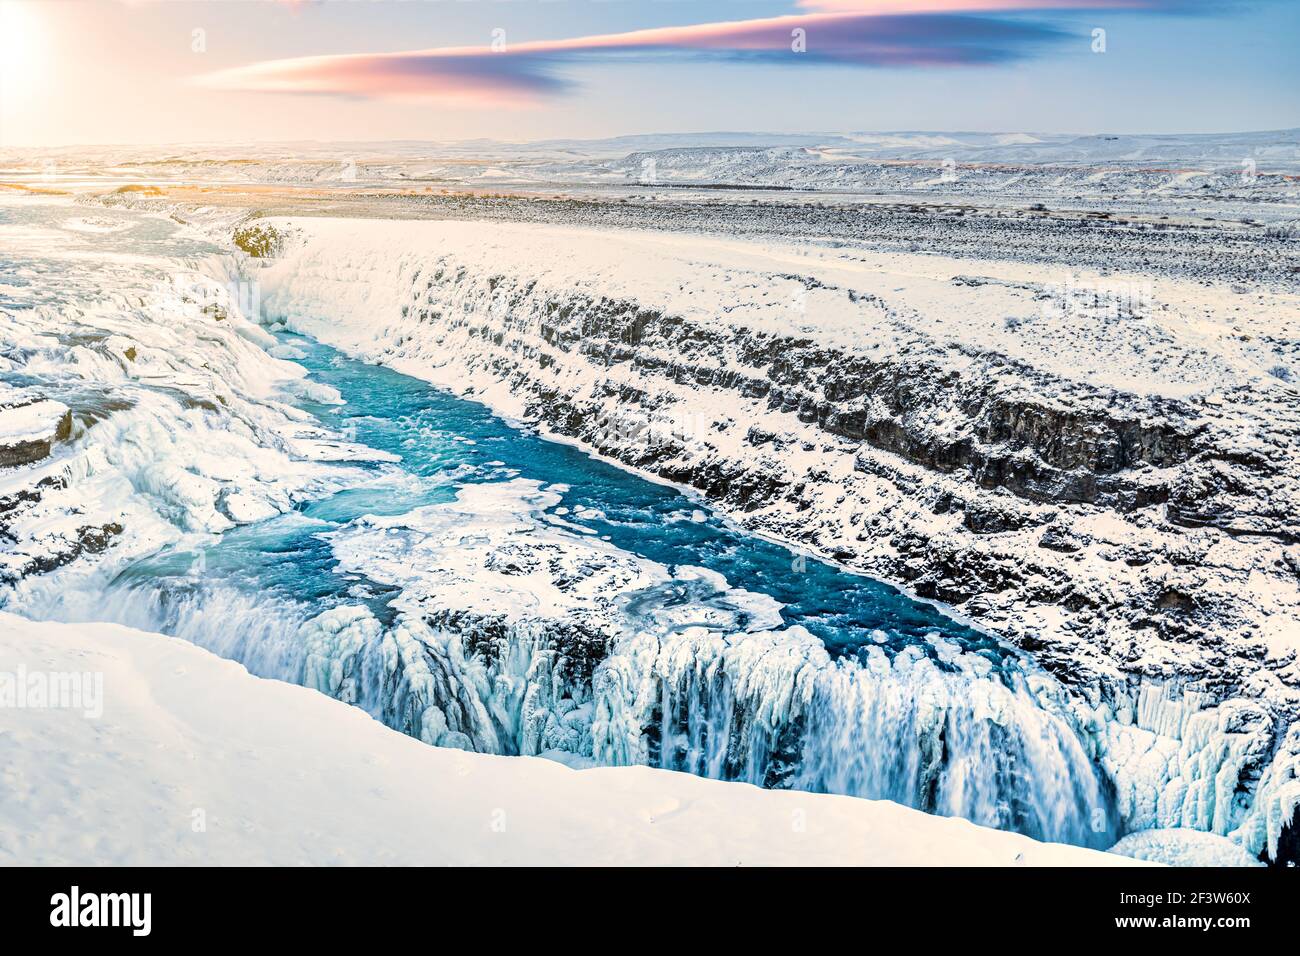 Cascata di Gullfoss durante l'inverno, in Islanda. Gullfoss è una delle attrazioni turistiche più popolari in Islanda. Foto Stock